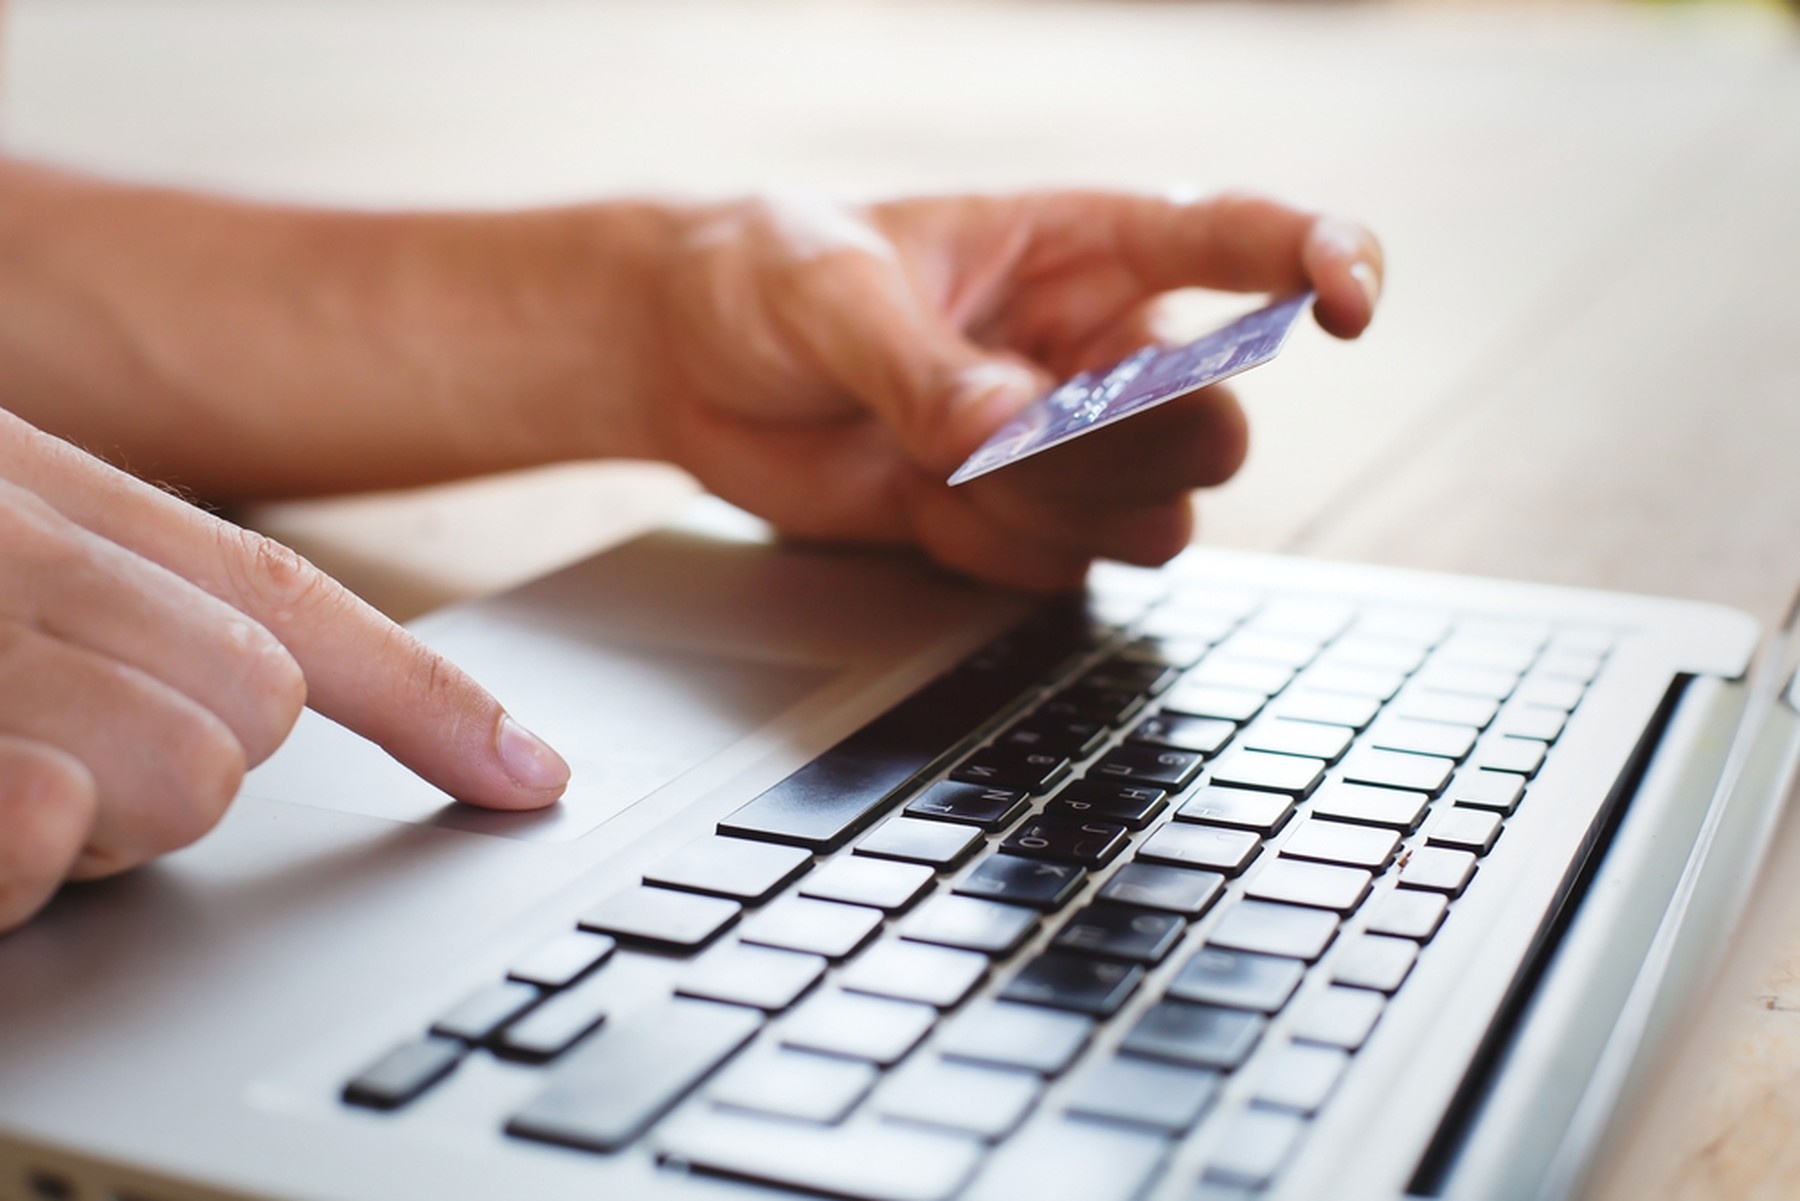 Manos de una persona utilizando su tarjeta de crédito para comprar online. Se ve también el teclado de un portátil.